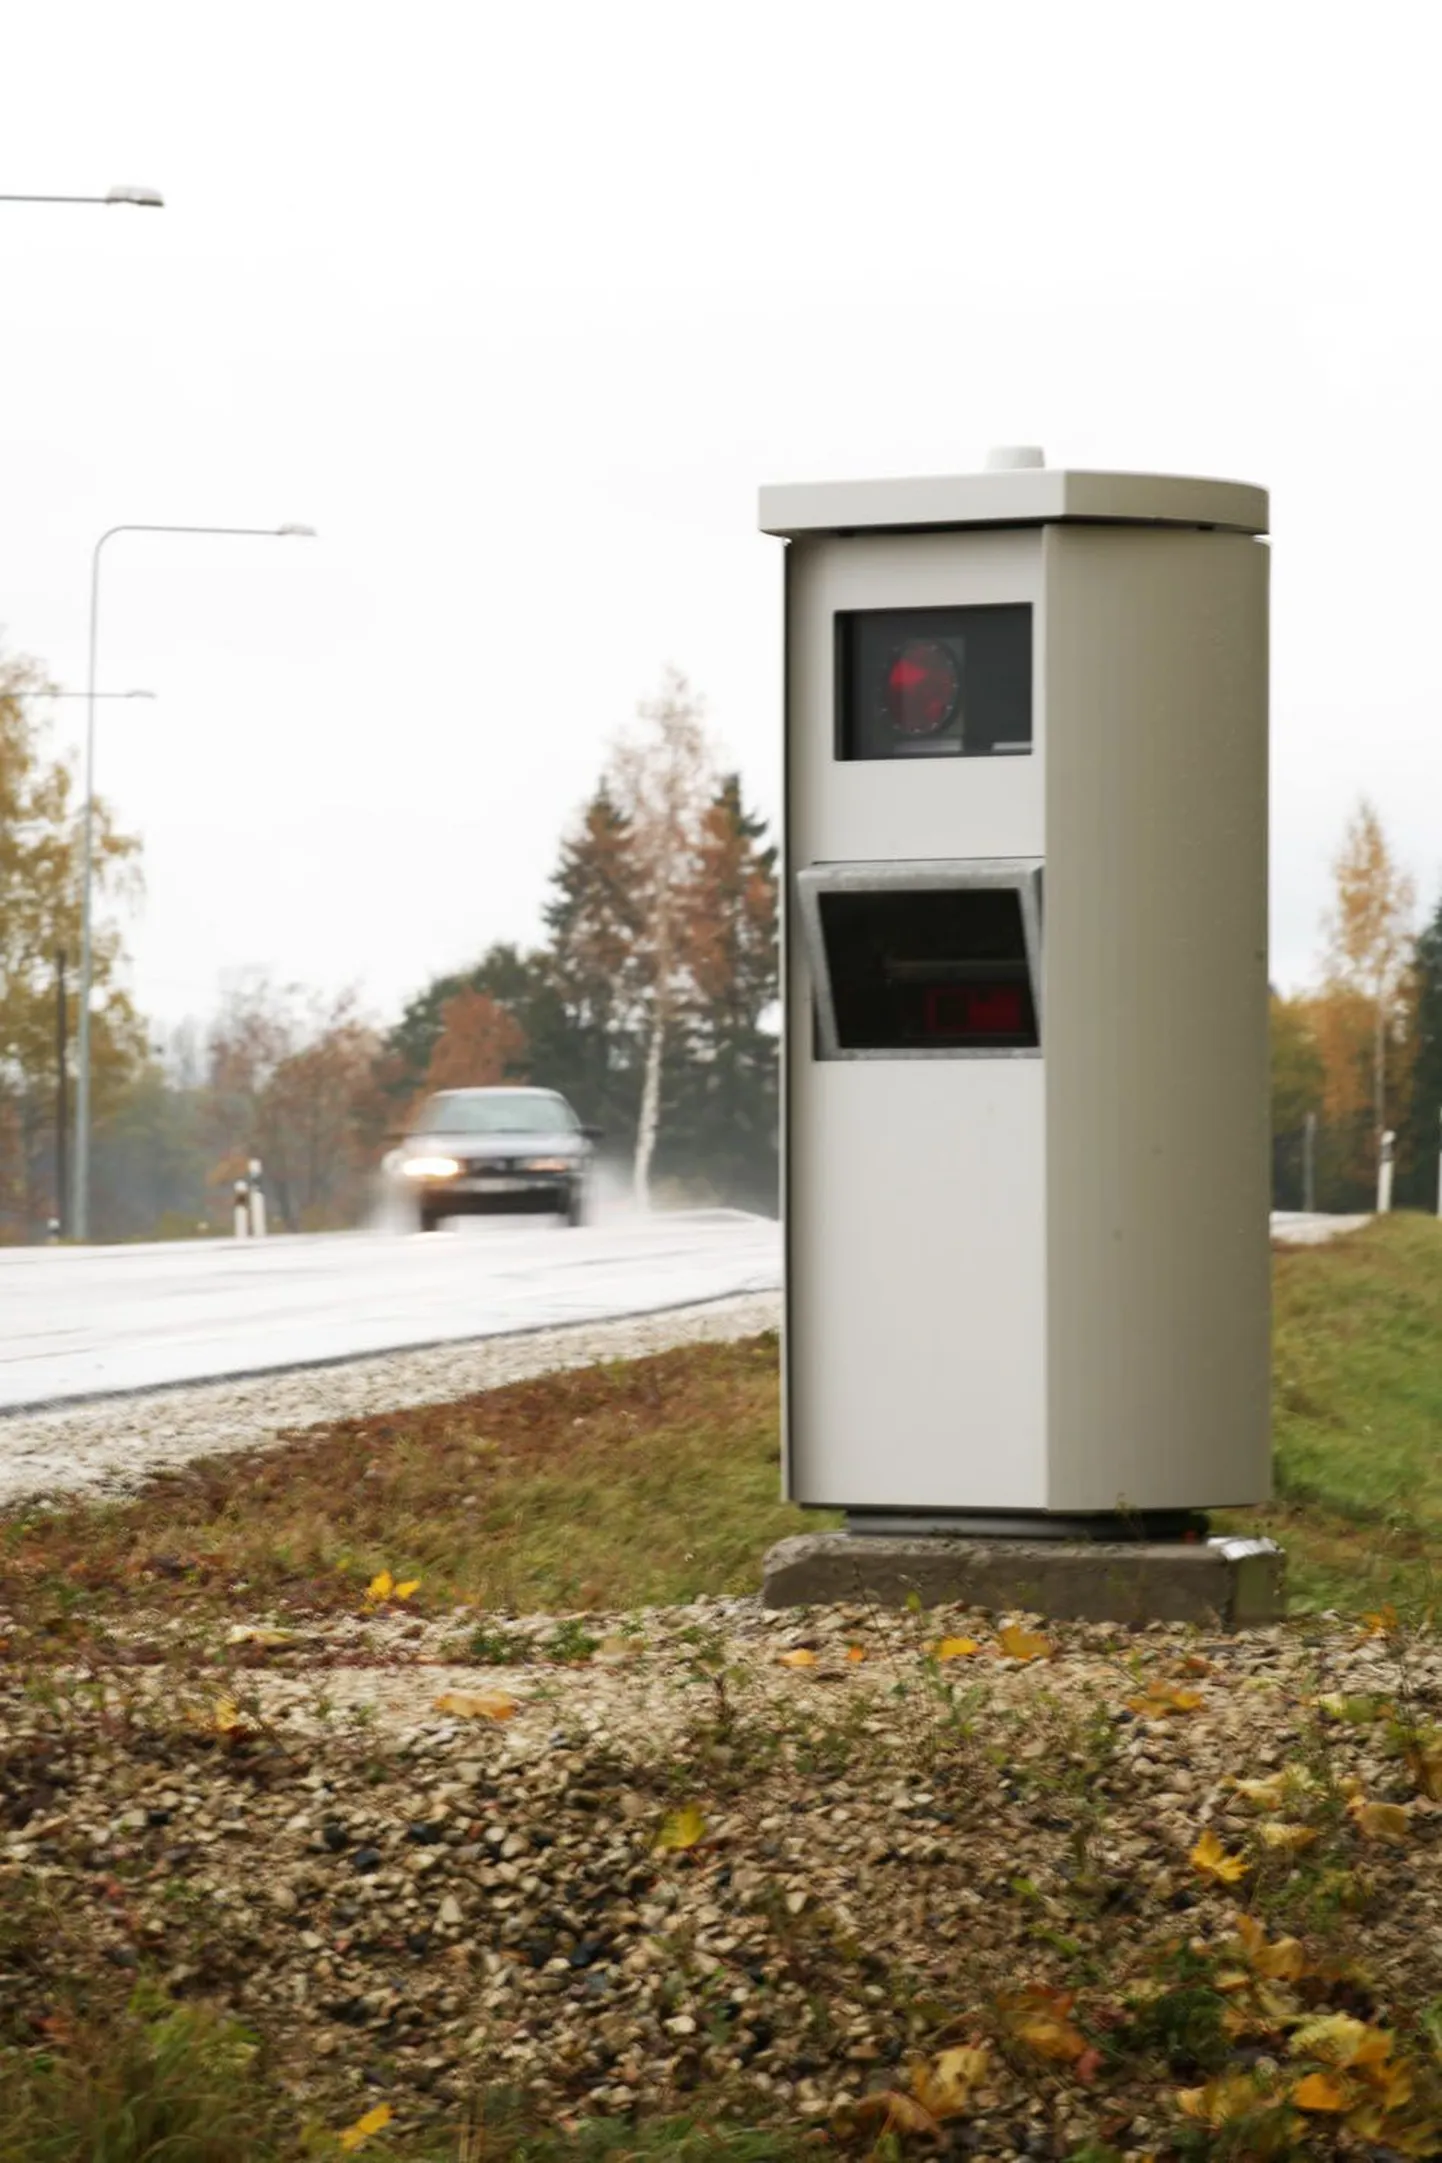 Üks kohti, kus kaamerad registreerivad sageli lubatud kiiruse ületamist, on Anna küla Tallinna-Tartu maanteel.